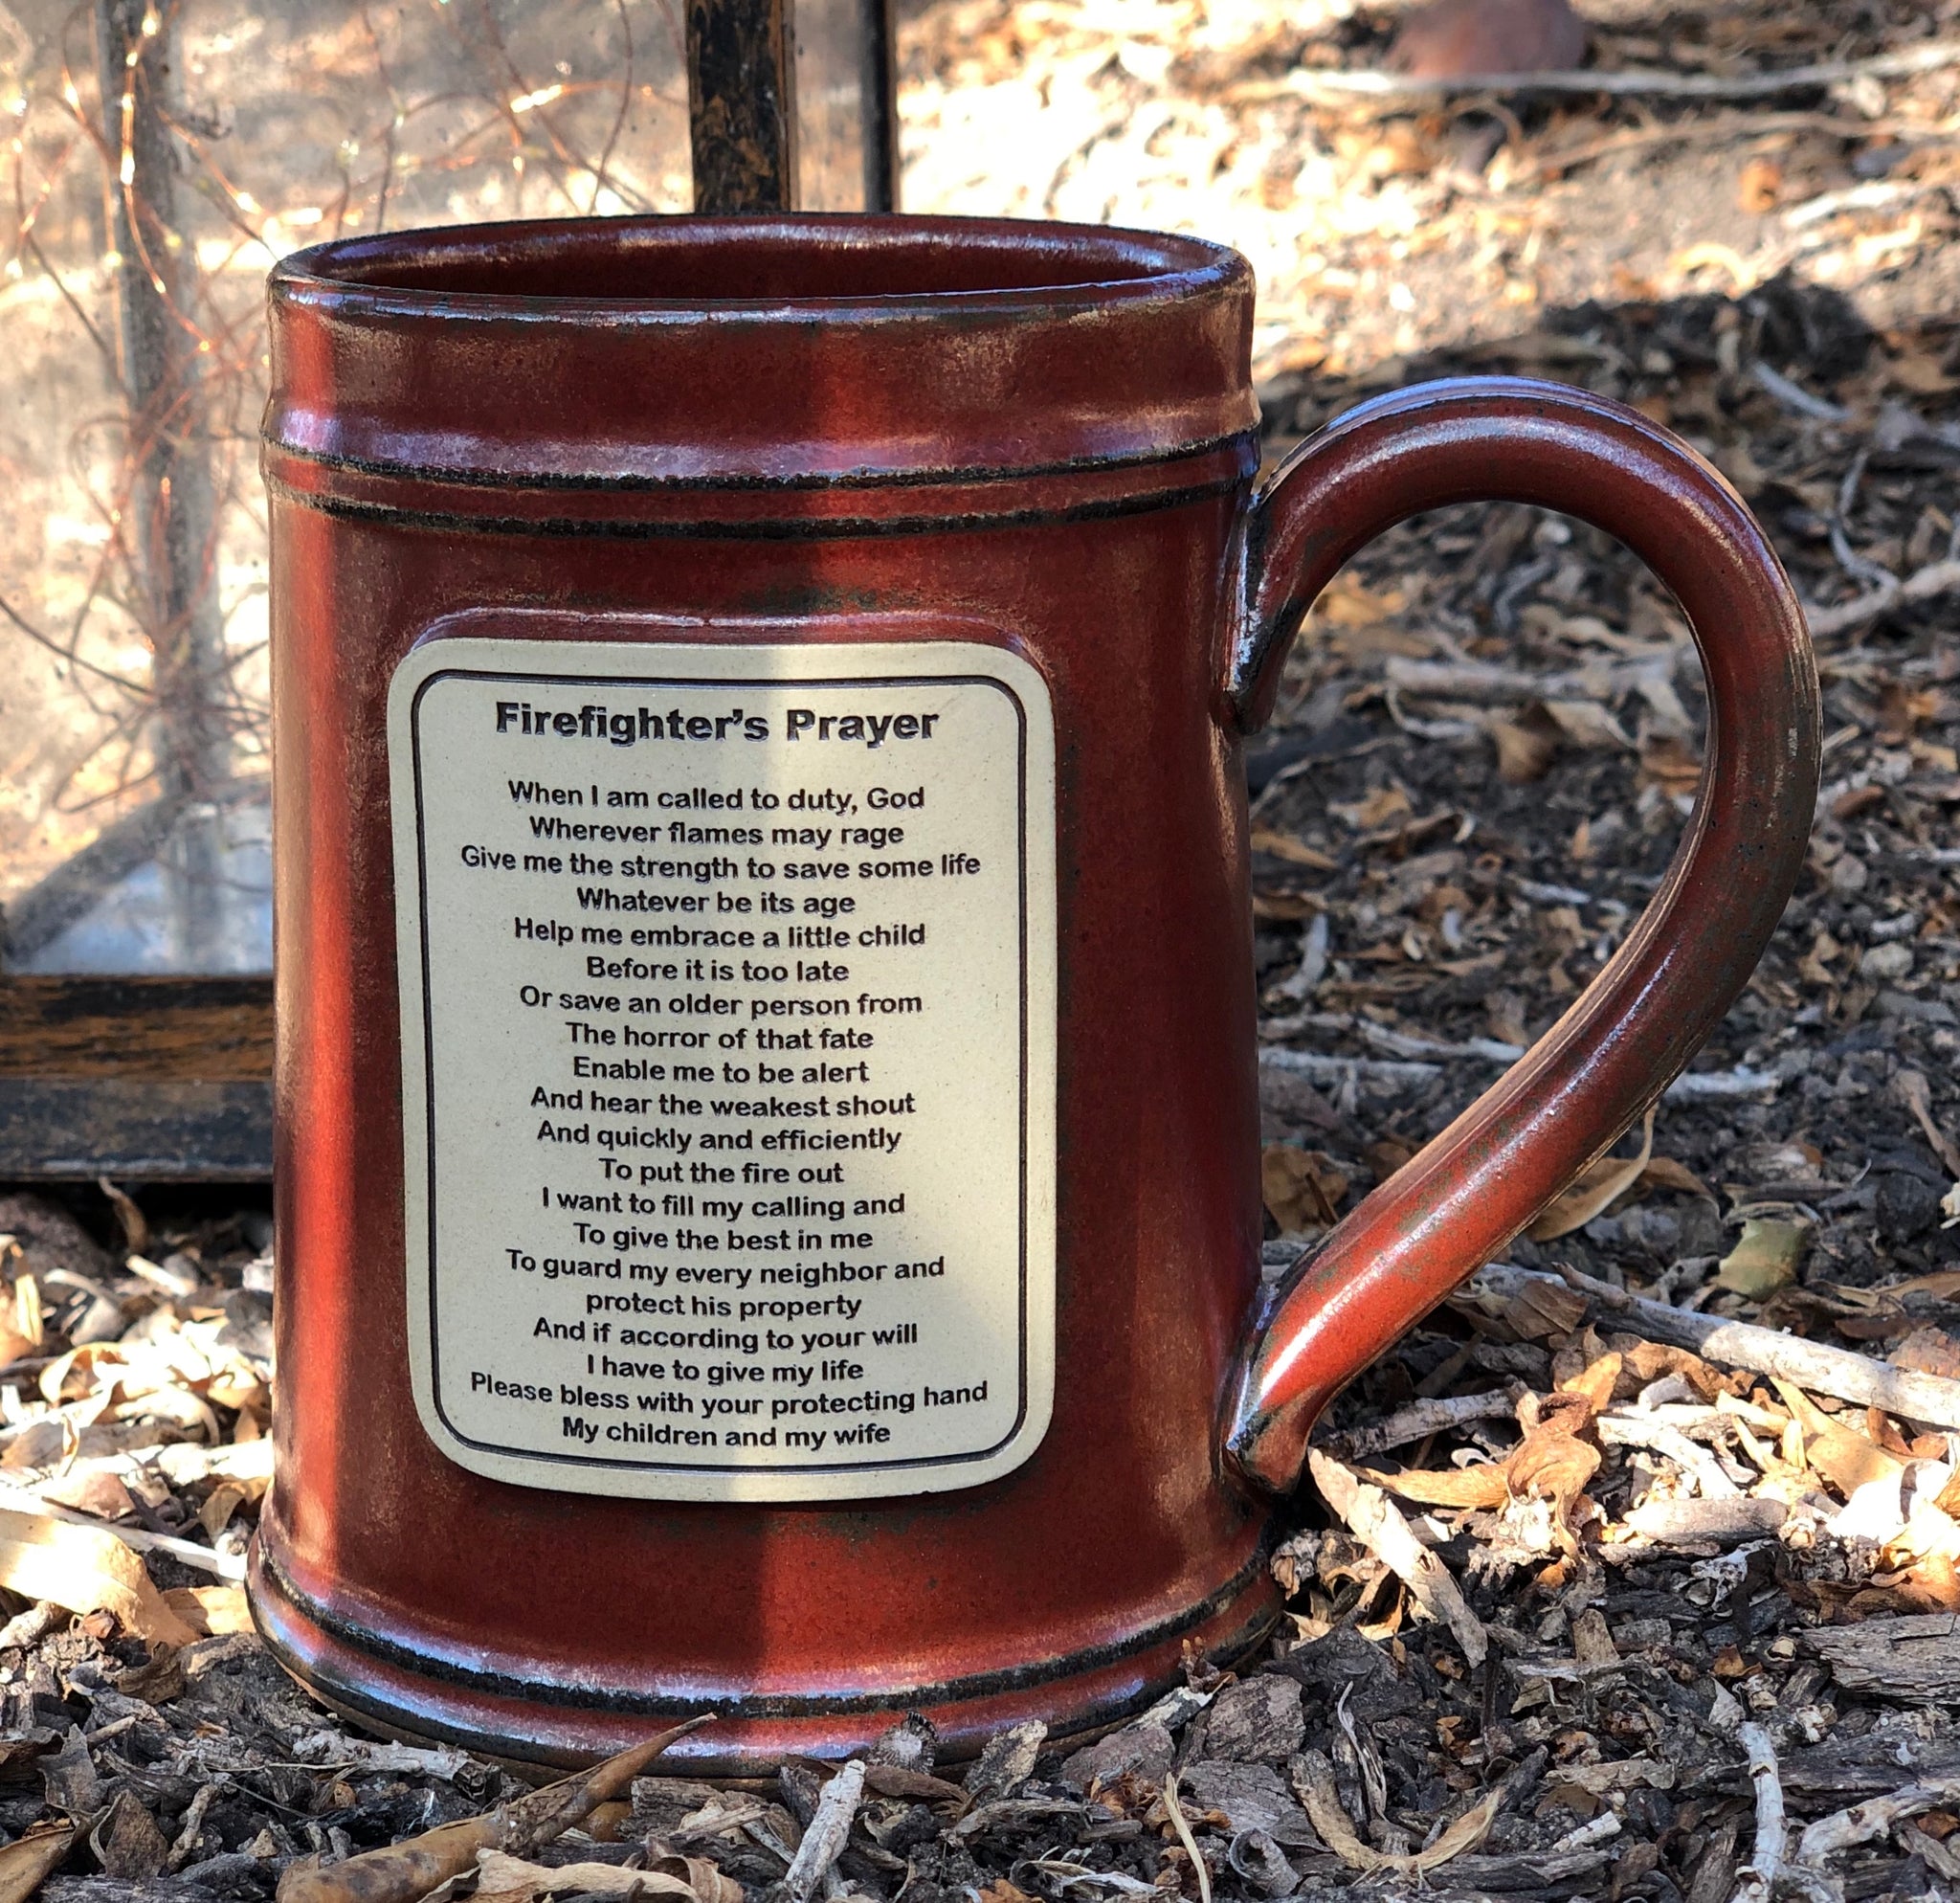 Firefighter's Prayer Mug